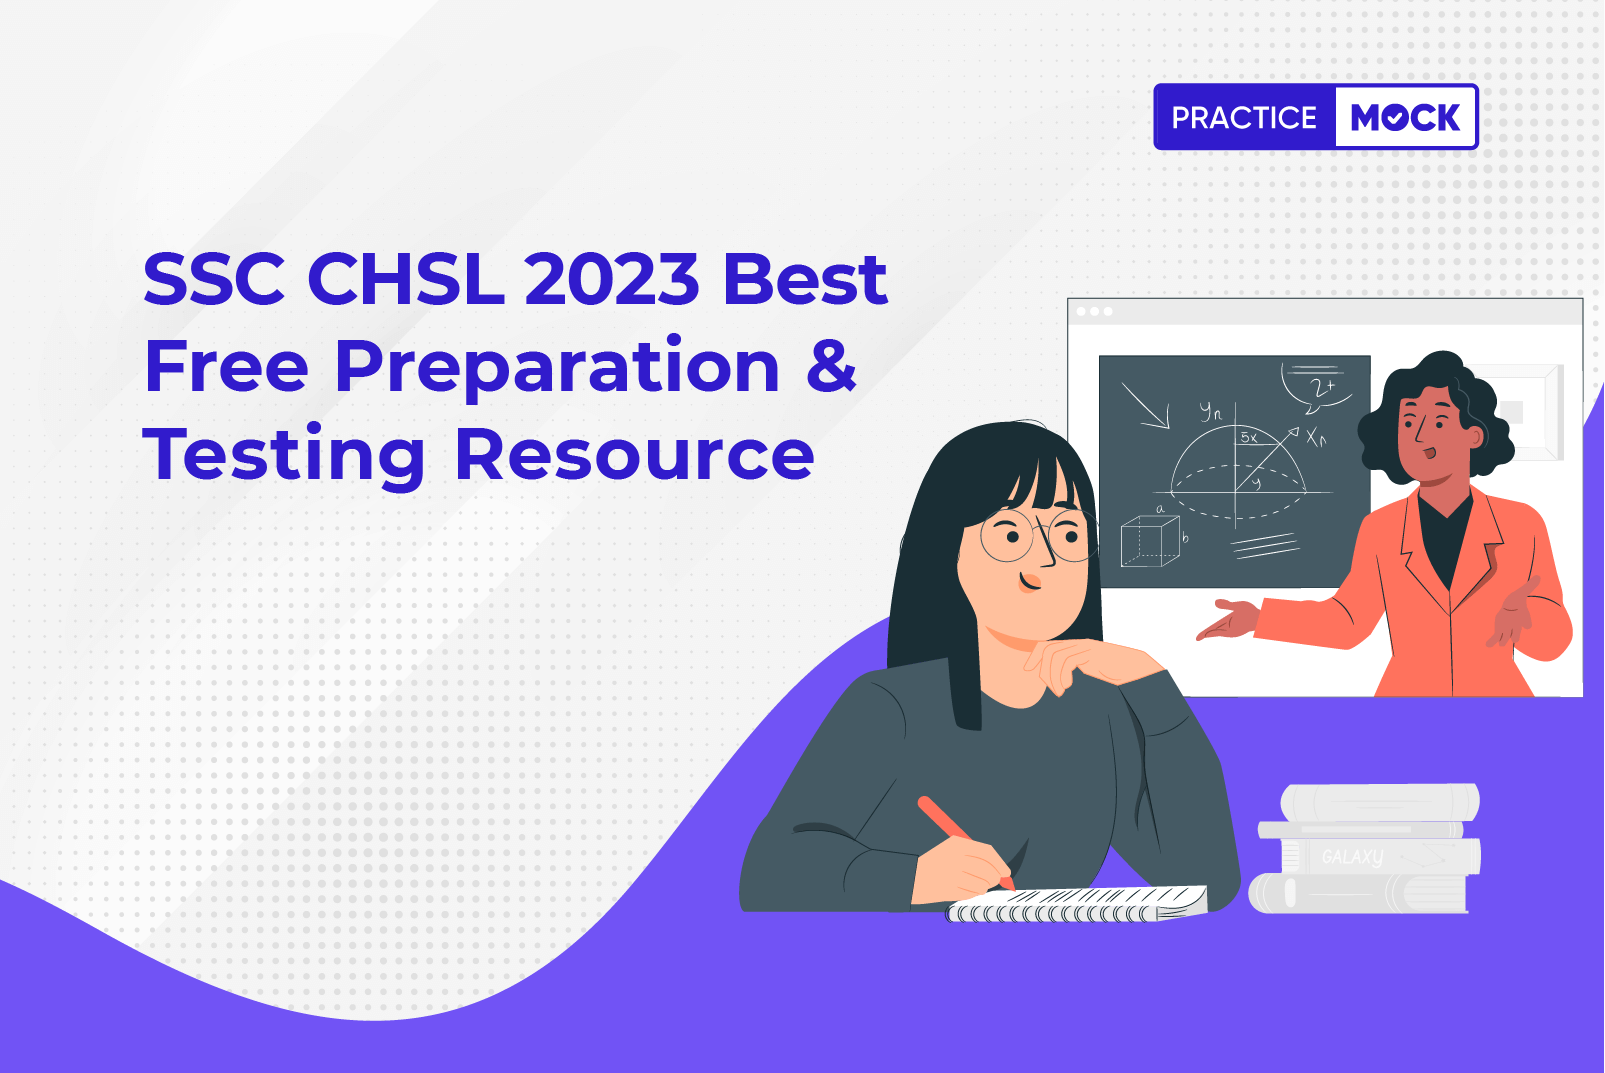 SSC CHSL 2023 Free Preparation Resource